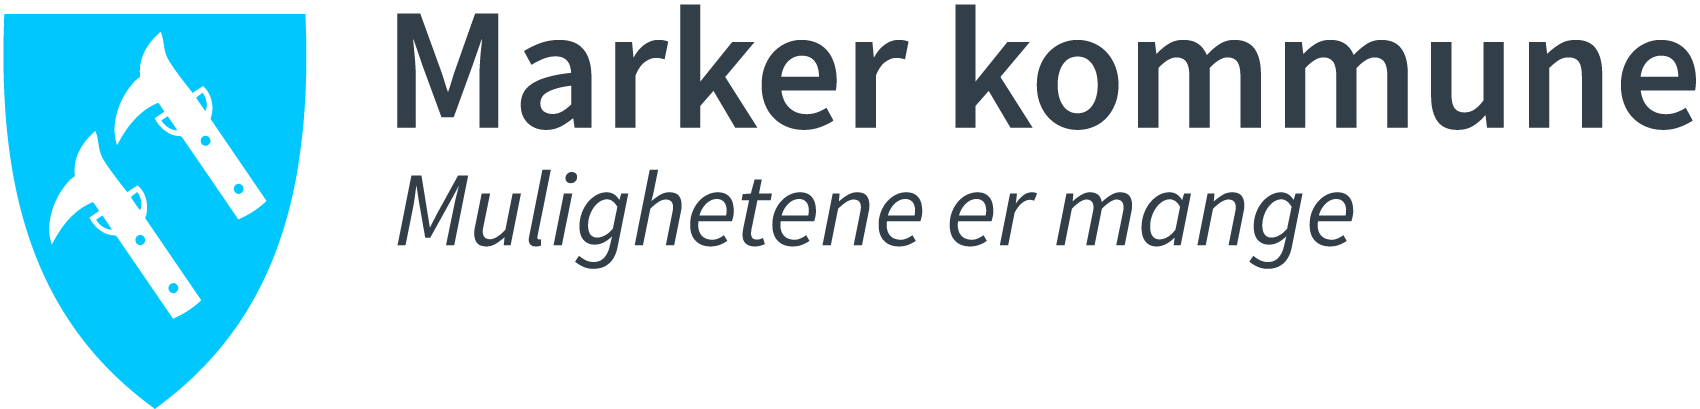 Marker kommune logo